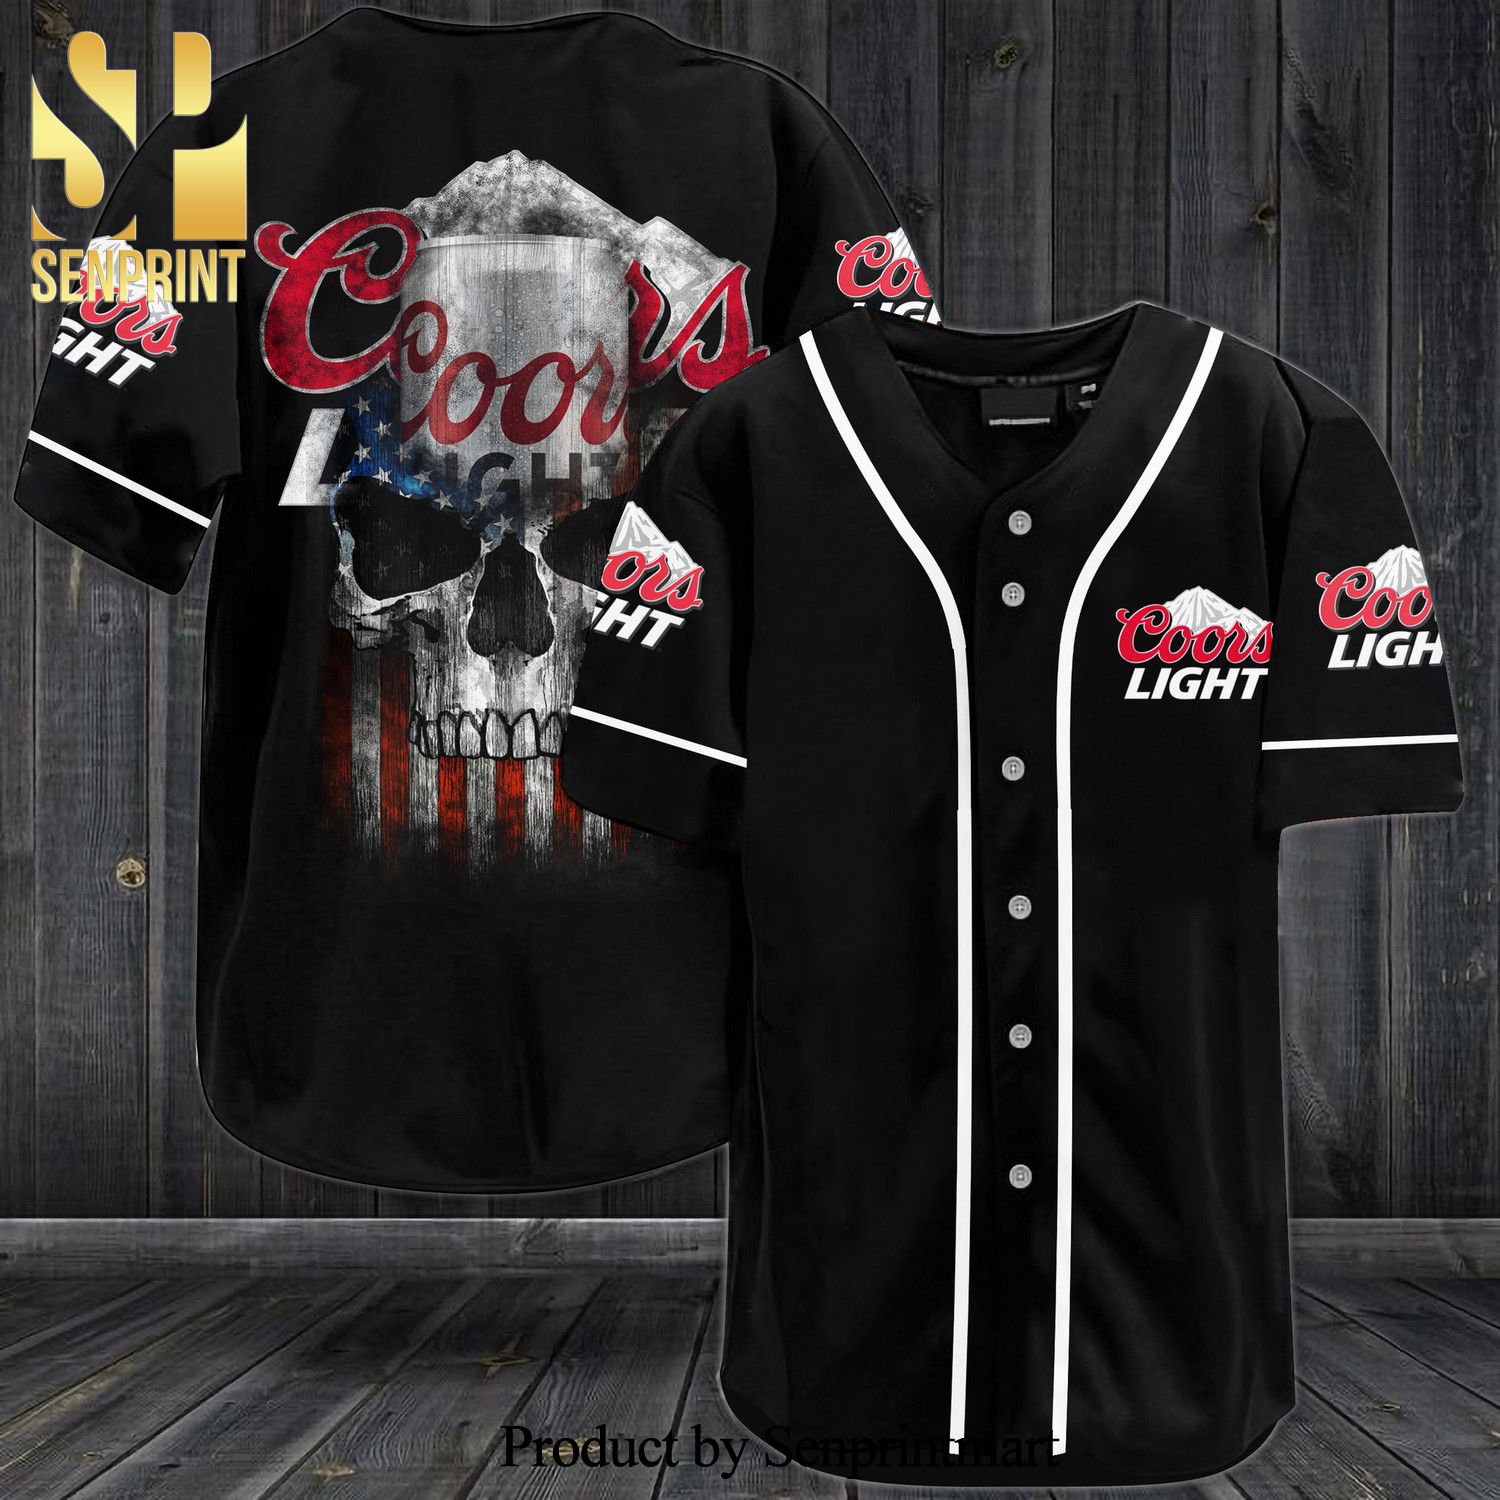 Coors Light USA Flag Skull All Over Print Unisex Baseball Jersey – Black